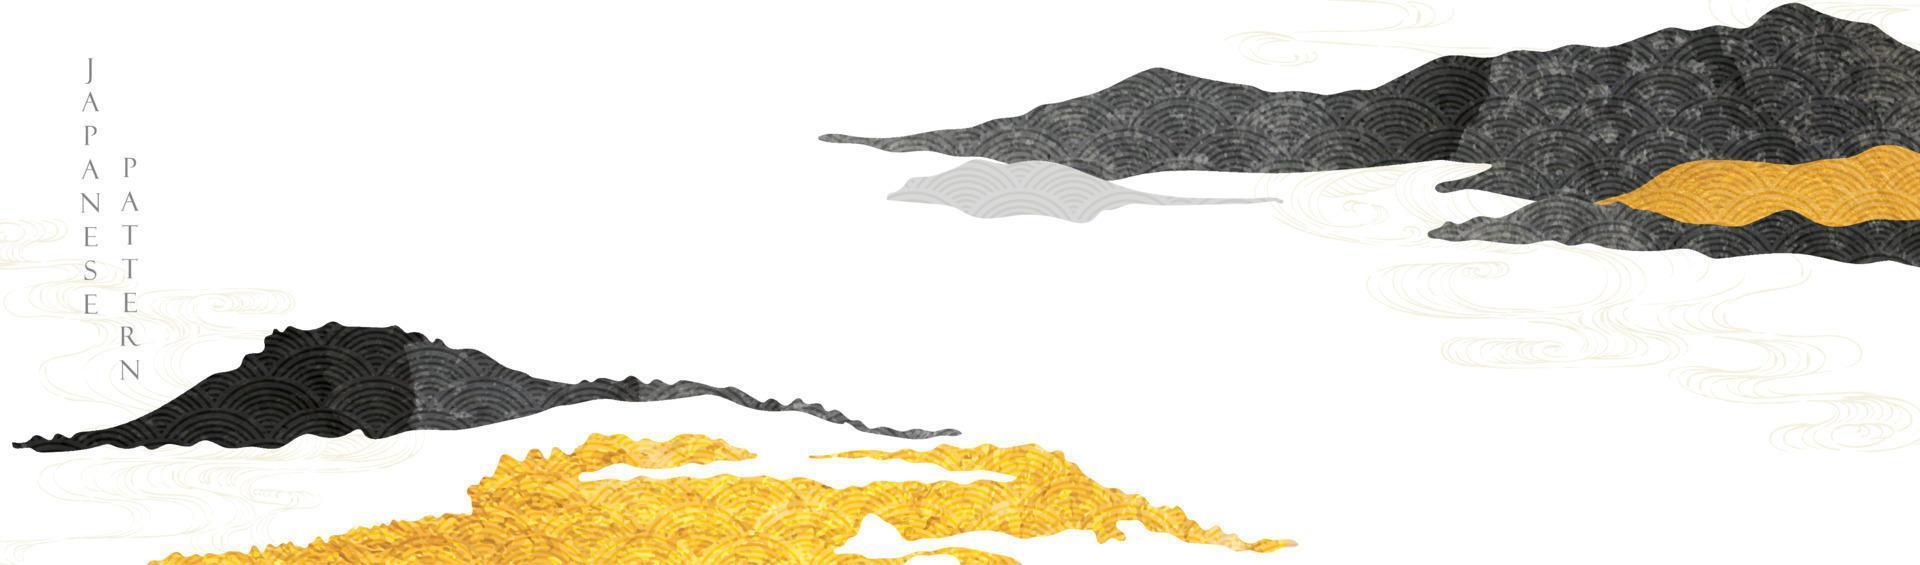 japanischer hintergrund mit handgezeichnetem bergwaldlinienvektor. goldene und schwarze textur im vintage-stil. Präsentationsvorlagendesign, Poster, Flyer, Website-Hintergründe, Banner oder Werbung. vektor